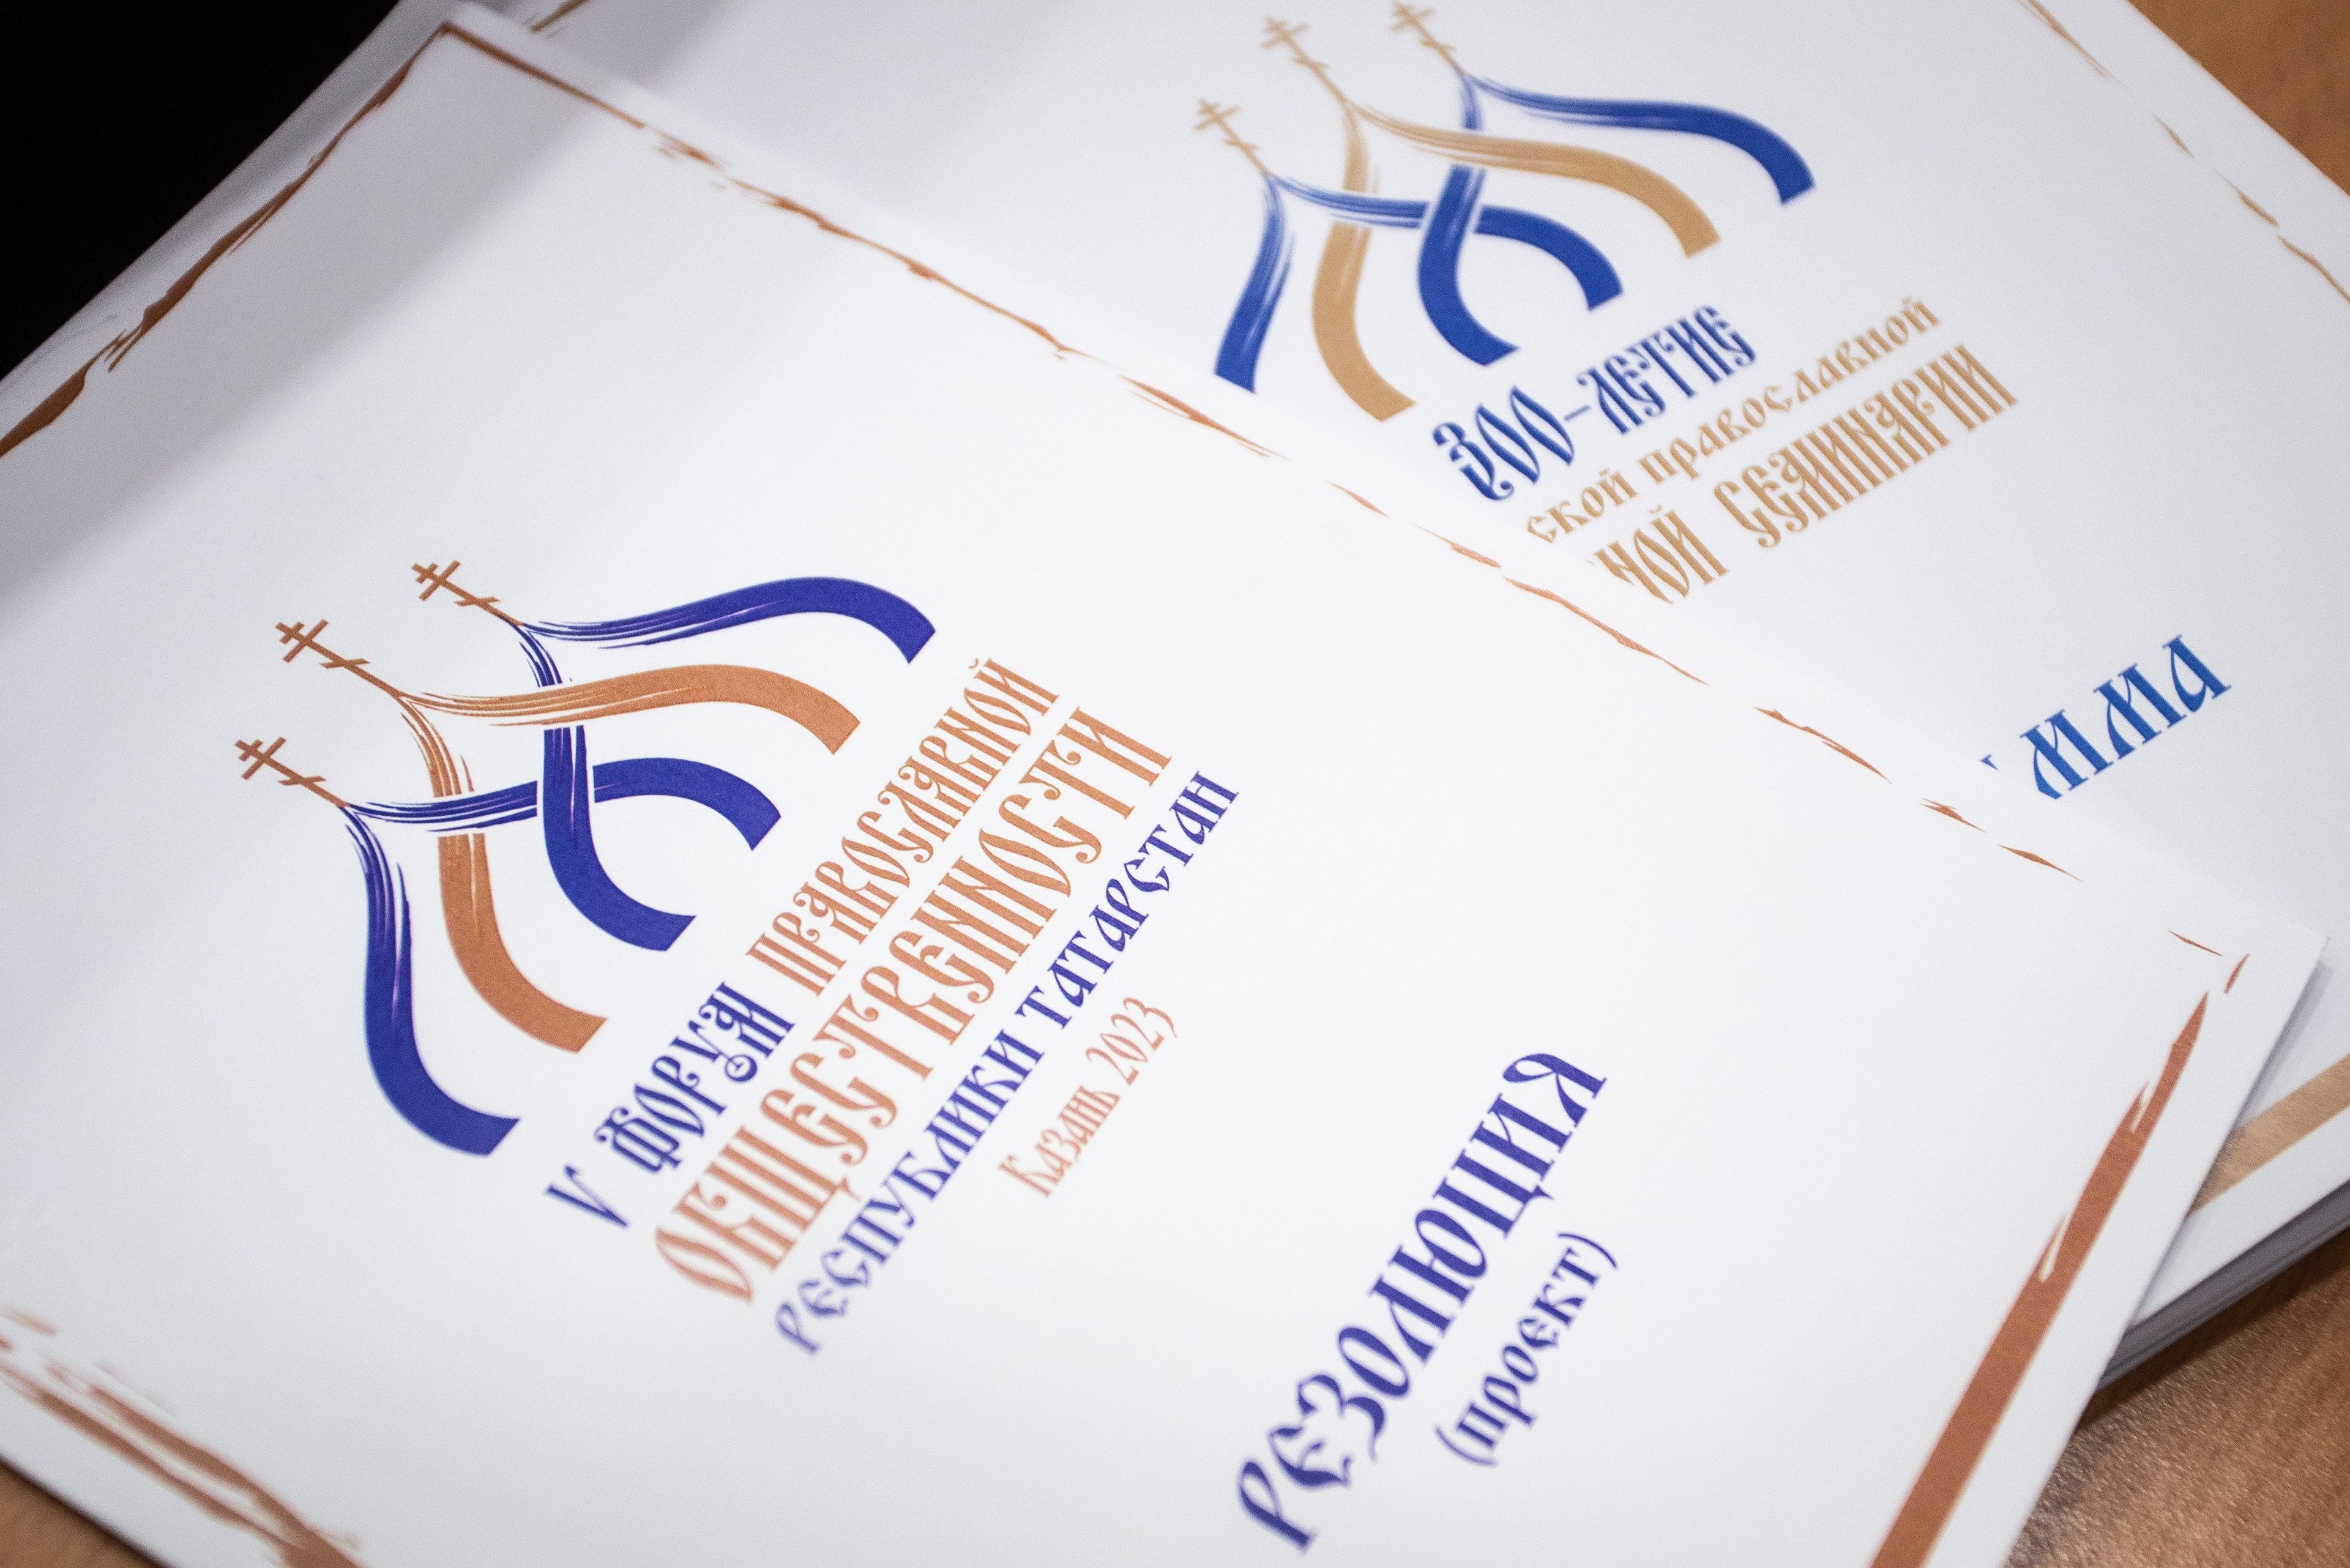 Международная конференция посвящена 300-летию духовного образования на казанской земле ,кафедра религиоведения, ИСФНиМК, международная конференция